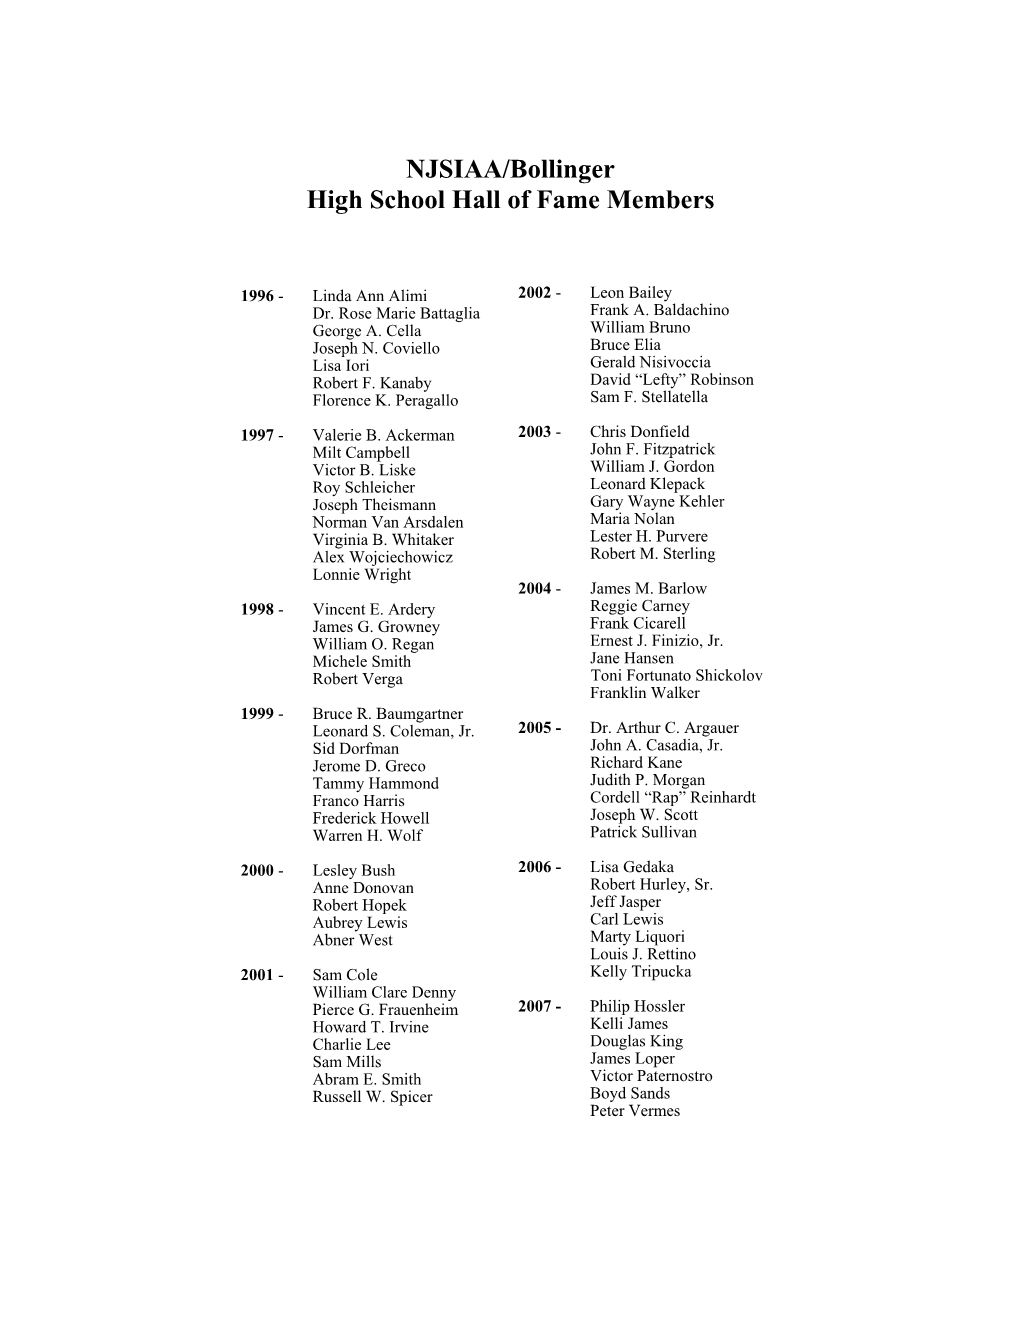 NJSIAA Hall of Fame Inductees List